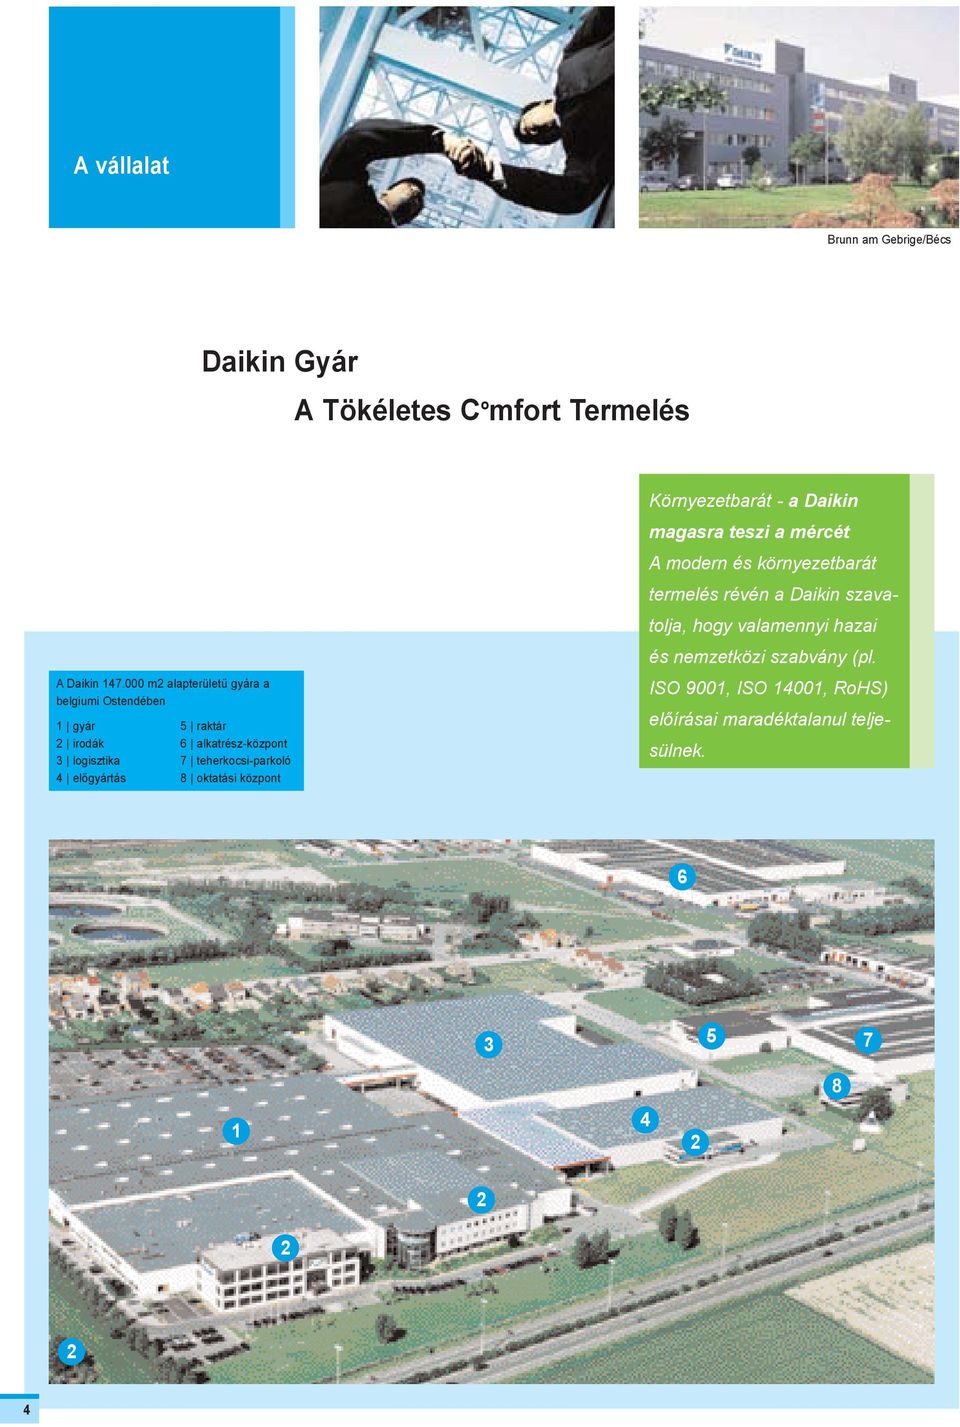 teherkocsi-parkoló 8 oktatási központ Környezetbarát - a Daikin magasra teszi a mércét A modern és környezetbarát termelés